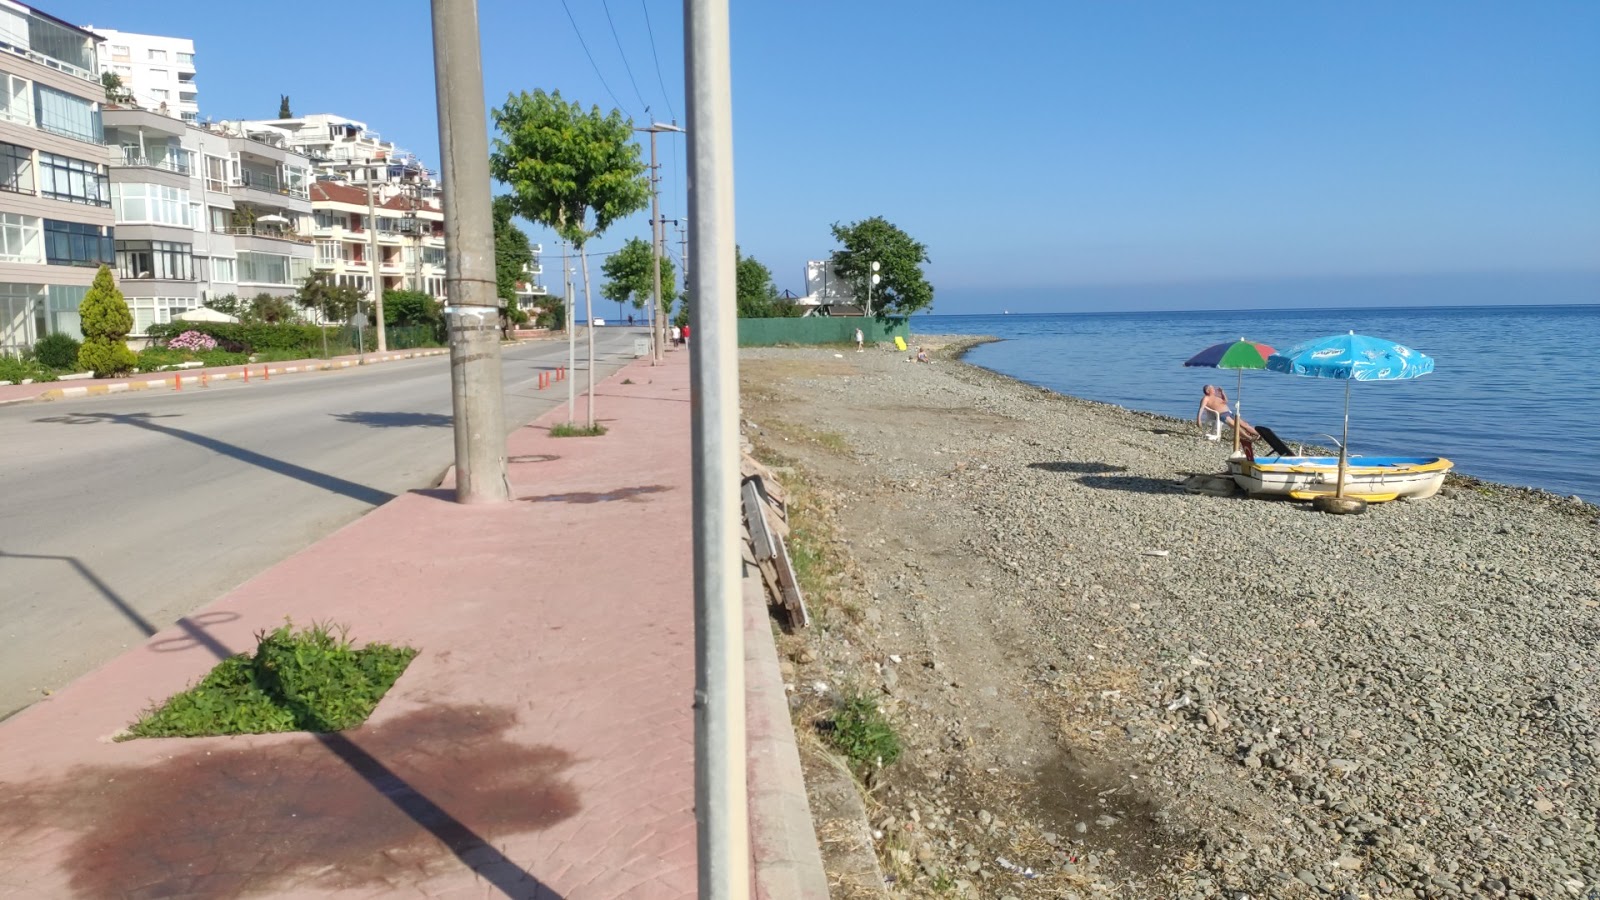 Φωτογραφία του Cinarcik beach με επίπεδο καθαριότητας εν μέρει καθαρό